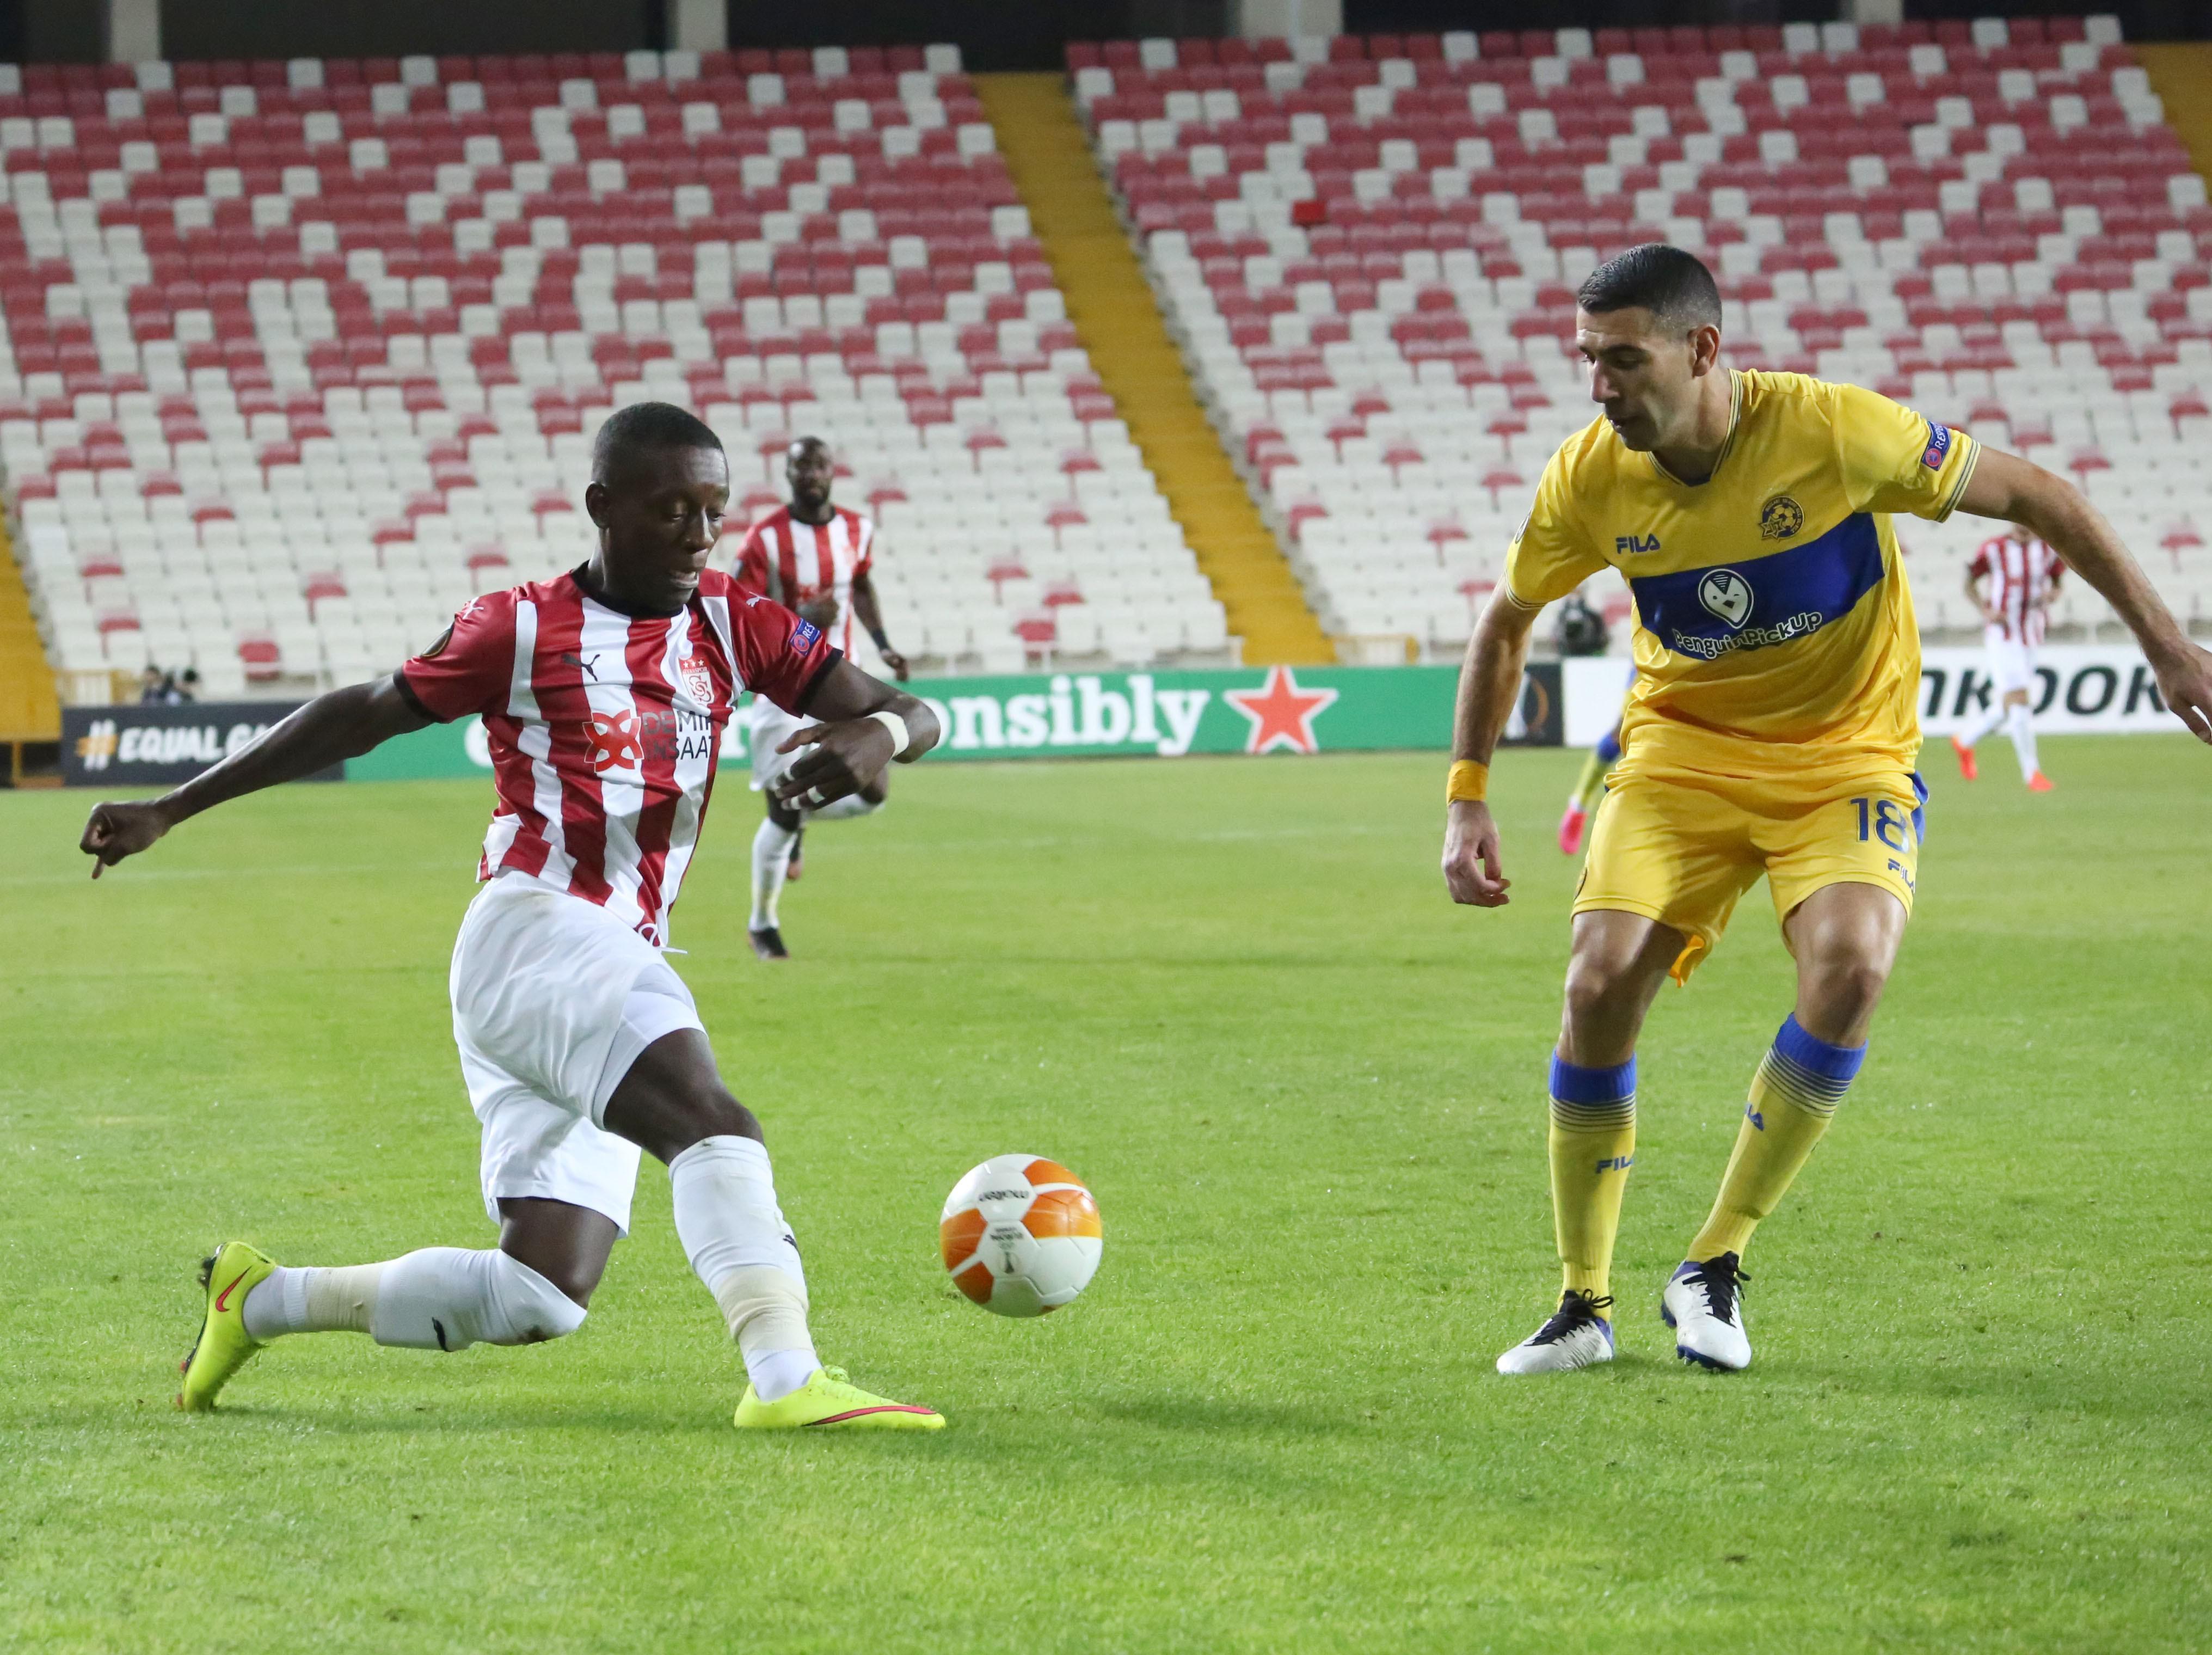 (ÖZET) Sivasspor - Maccabi Tel-Aviv maç sonucu: 1-2